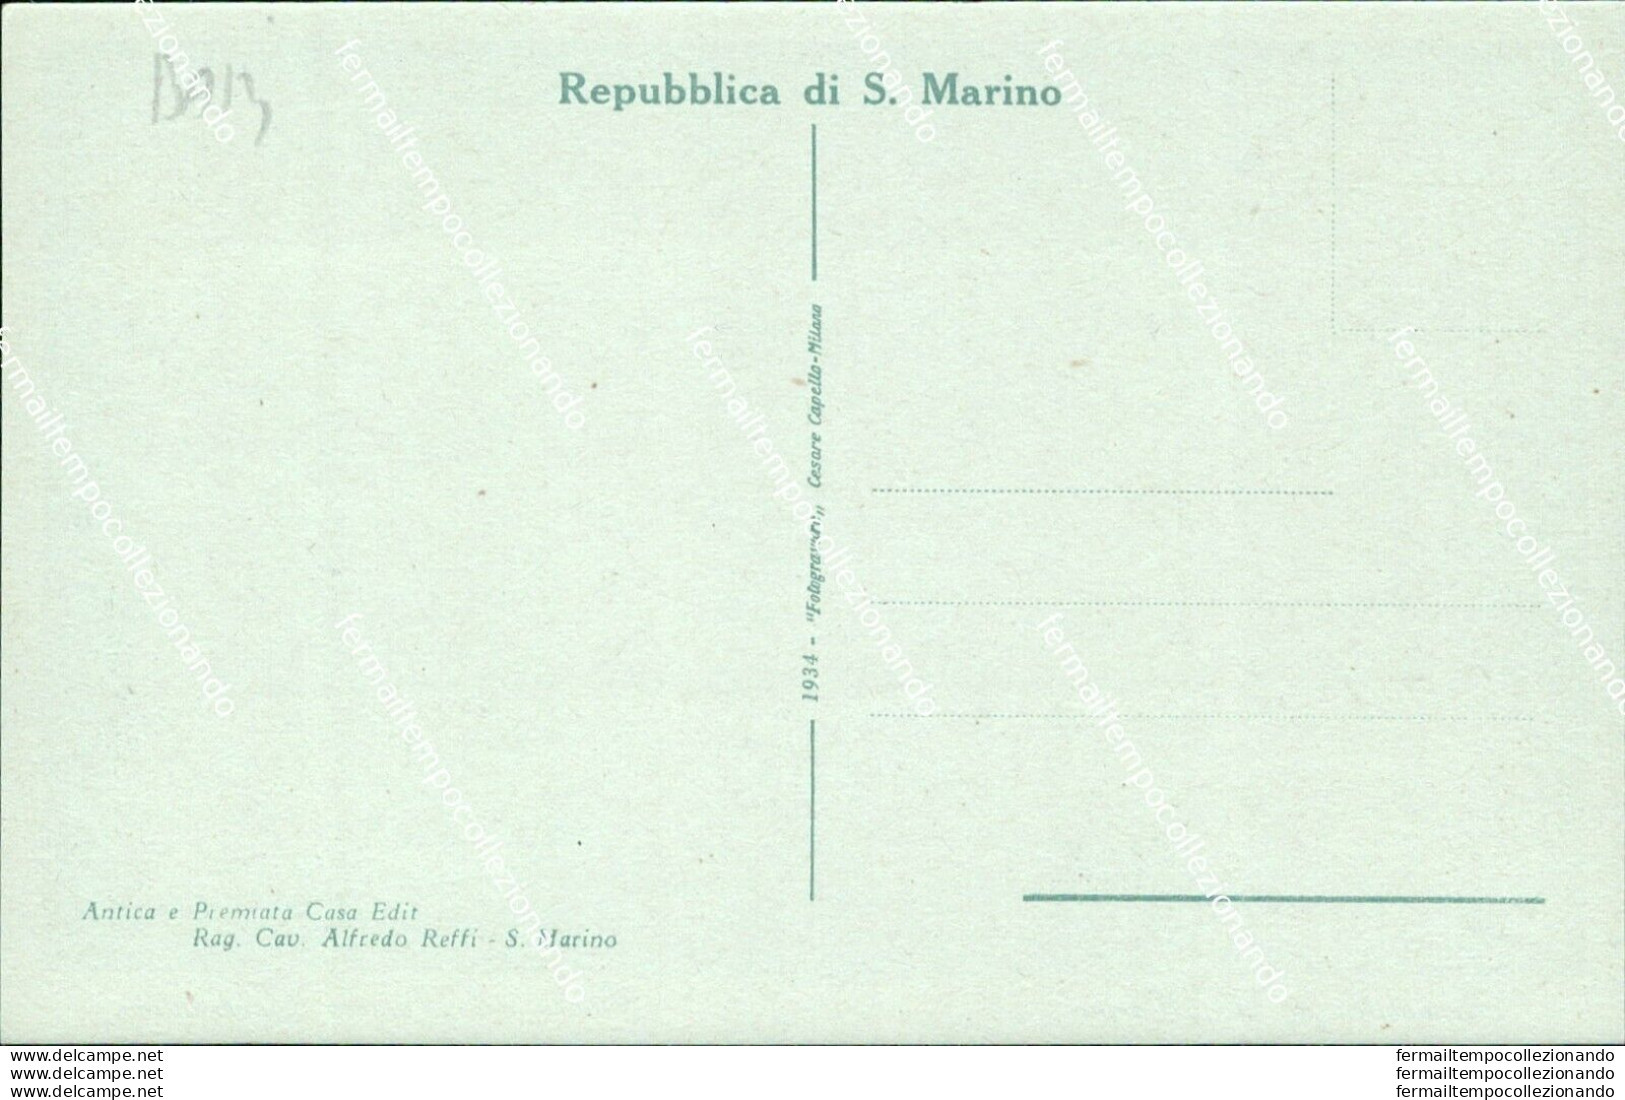 Ba13 Cartolina Repubblica Di San Marino Fianco Del Palazzo Governativo - Saint-Marin